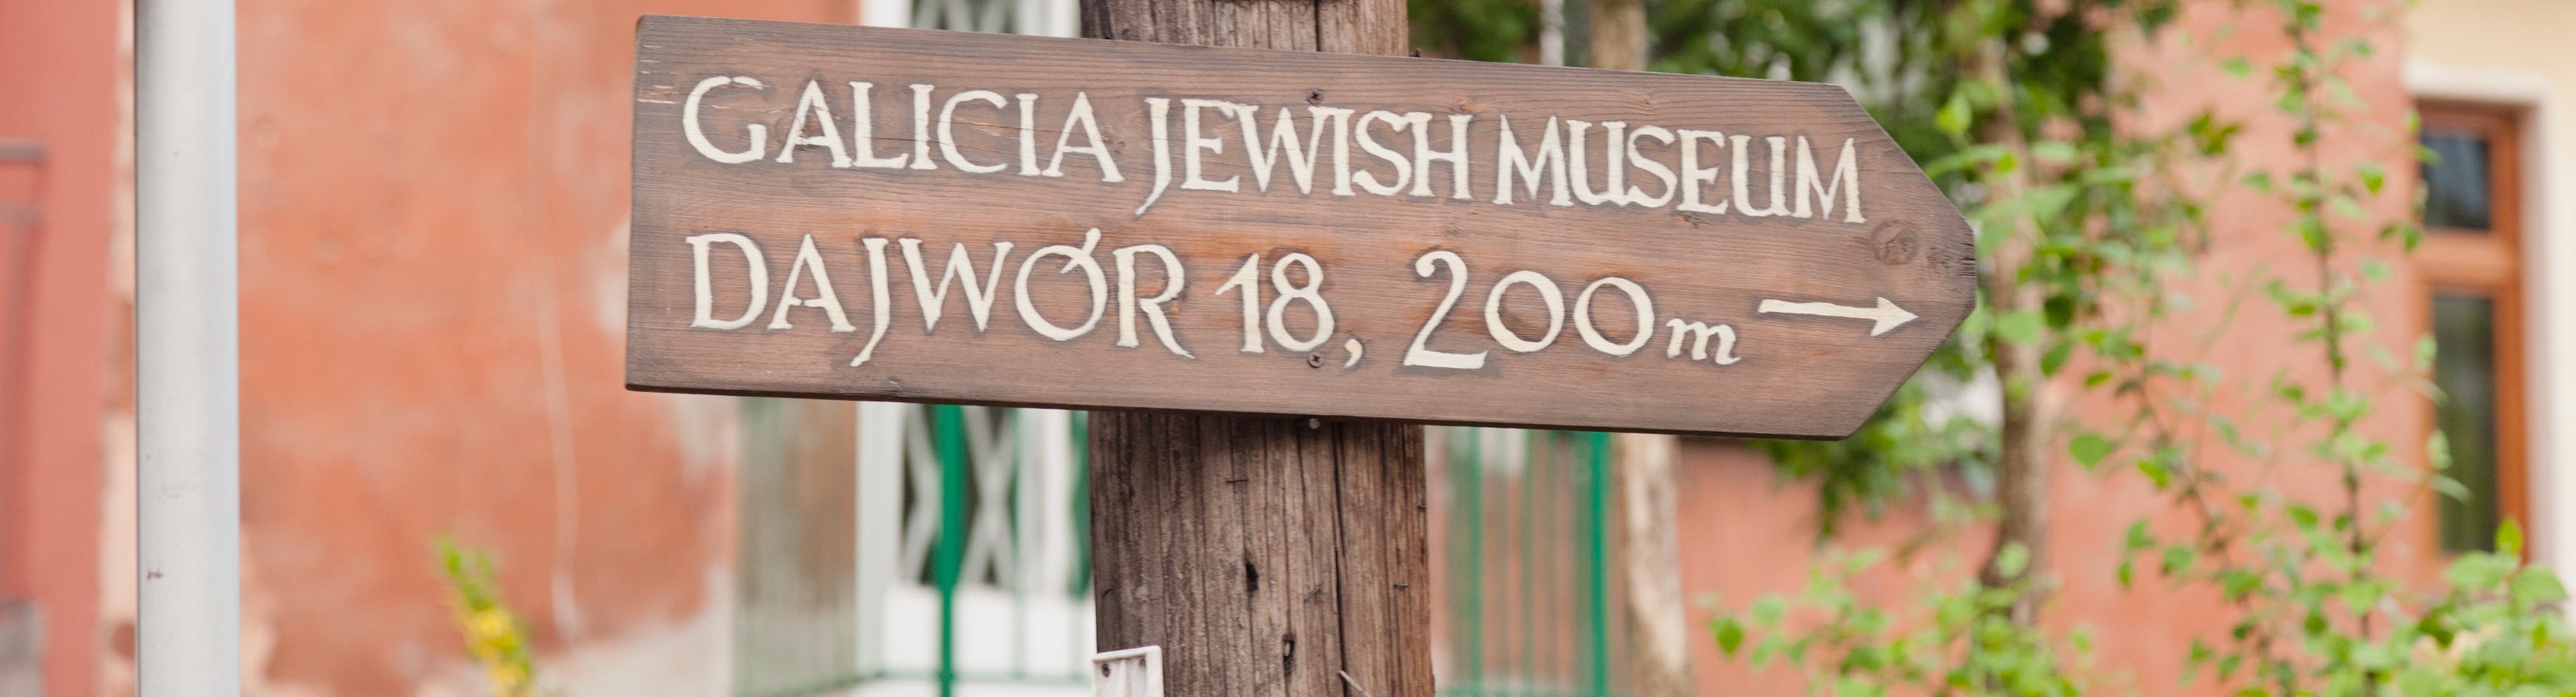 Museo ebraico della Galizia